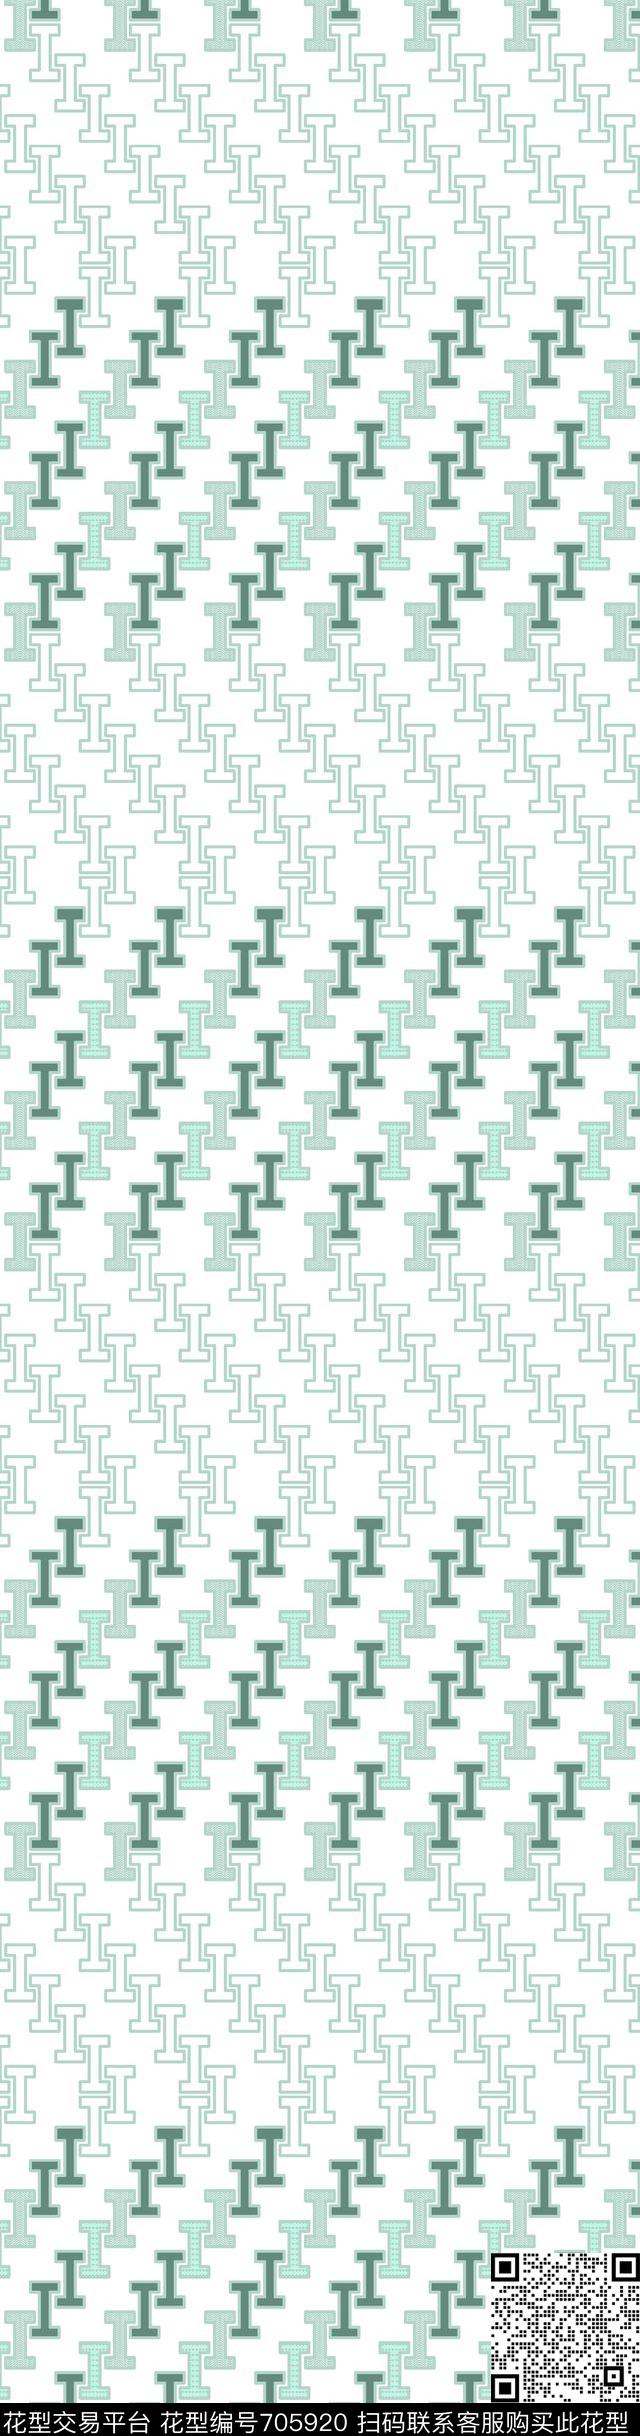 021.jpg - 705920 - 小方块 菱形 几何 - 传统印花花型 － 窗帘花型设计 － 瓦栏